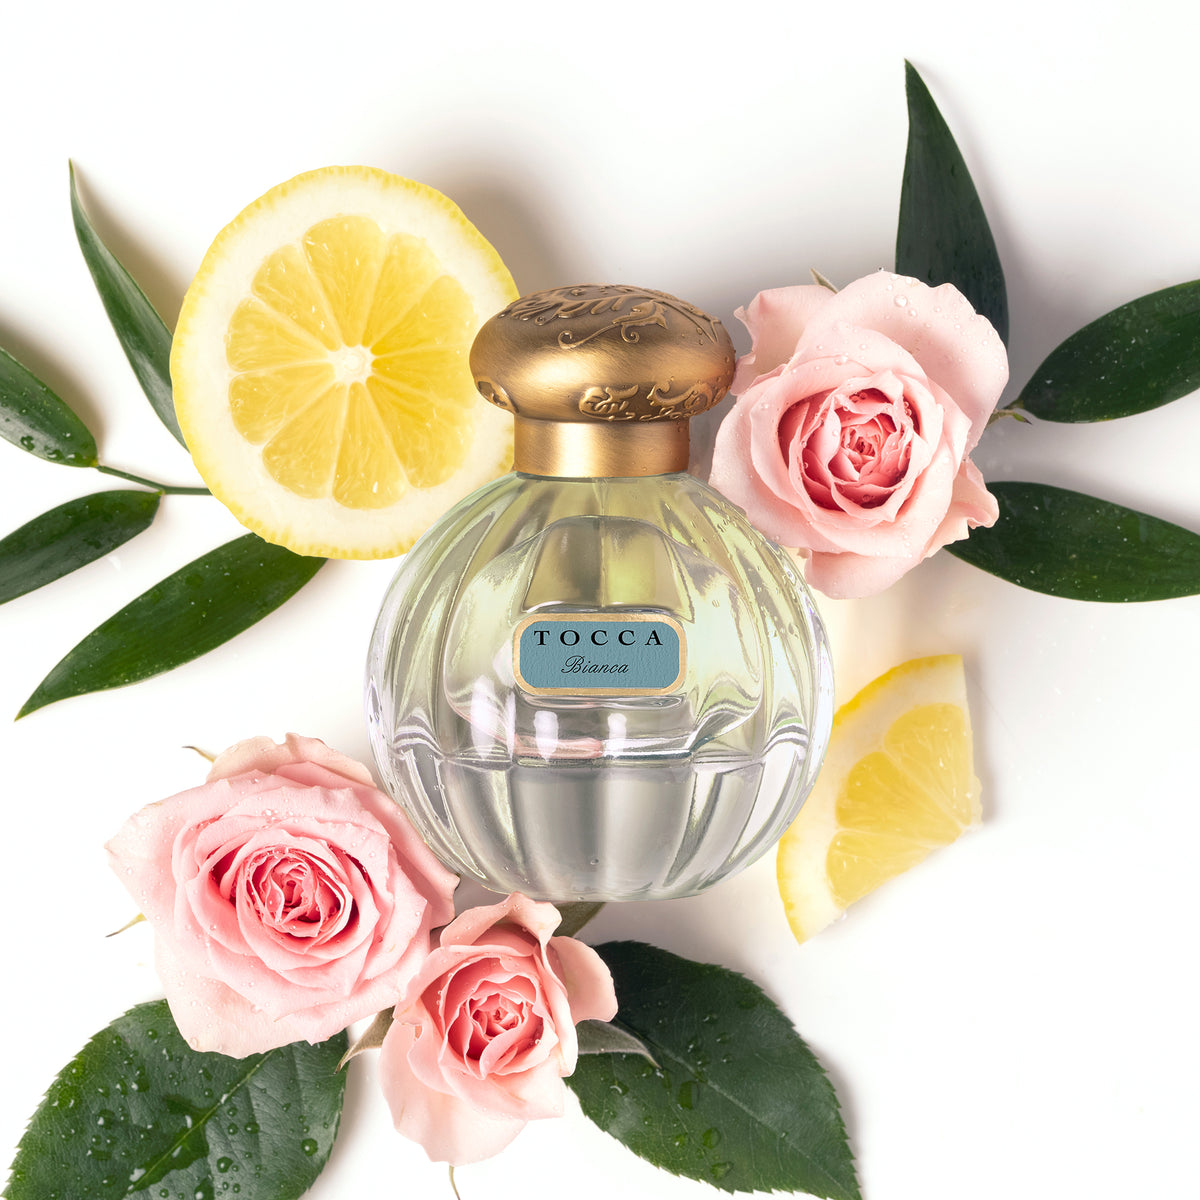 Florence Eau de Parfum bottle with flower and lemon